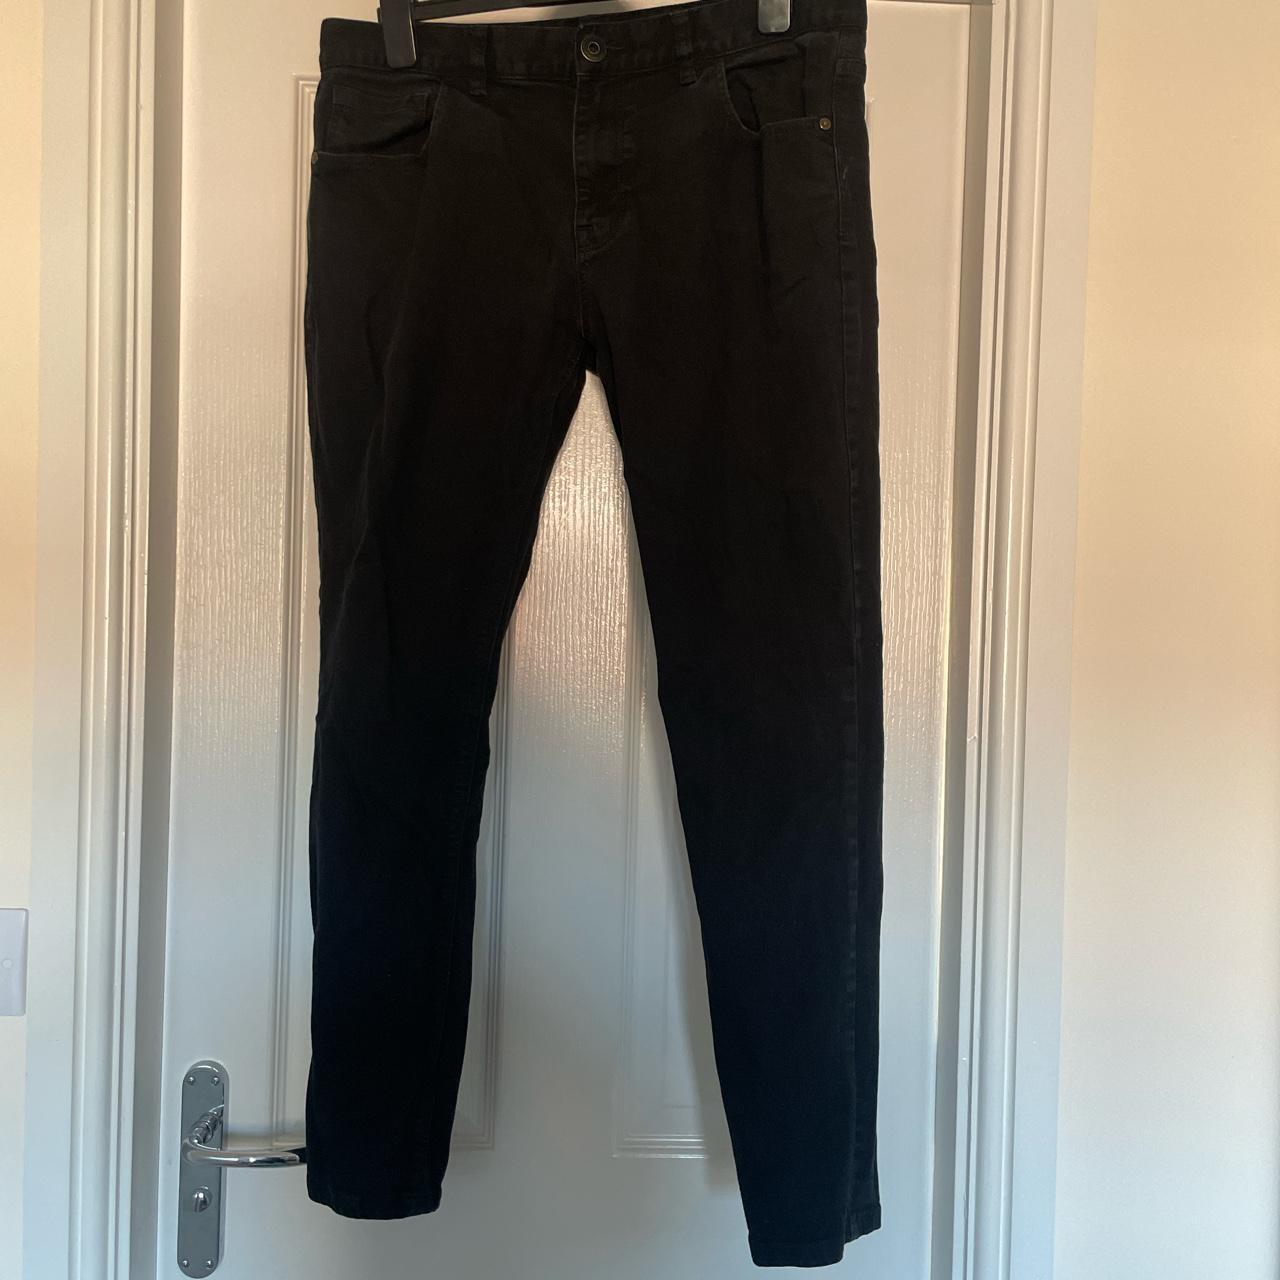 Next super skinny black jeans size 36R. Have only... - Depop